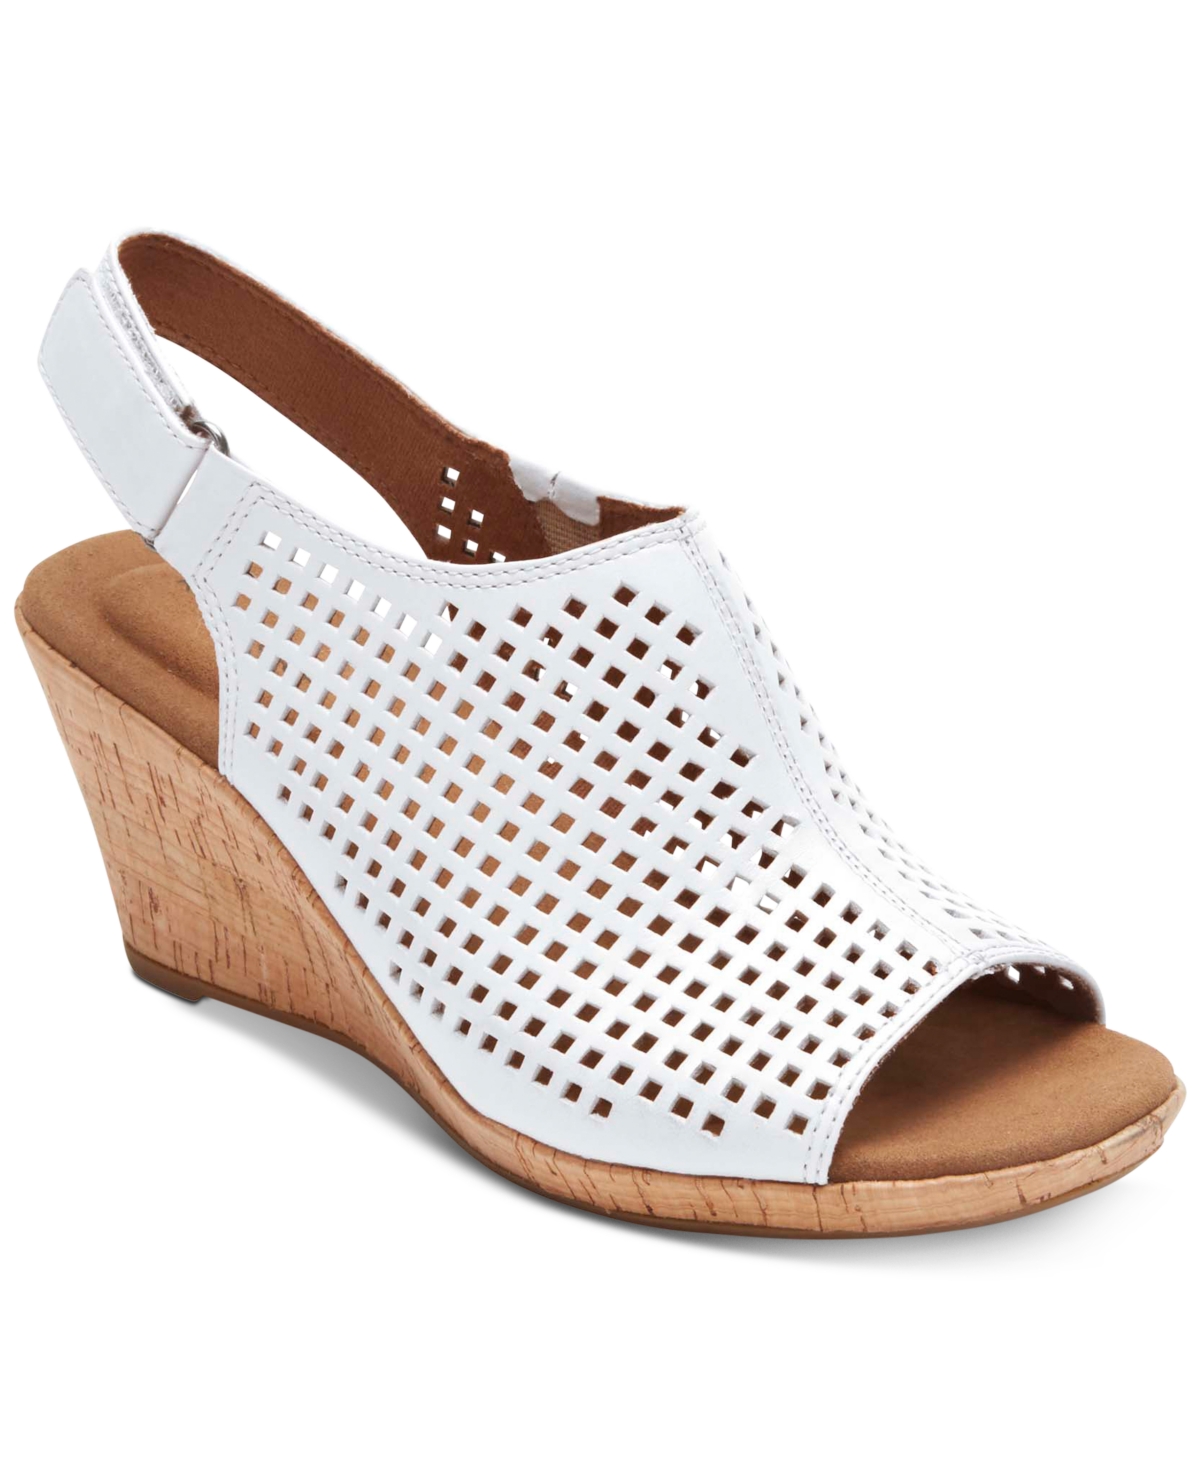 Women's Briah Perf Sling Wedge Sandals - Light Beige